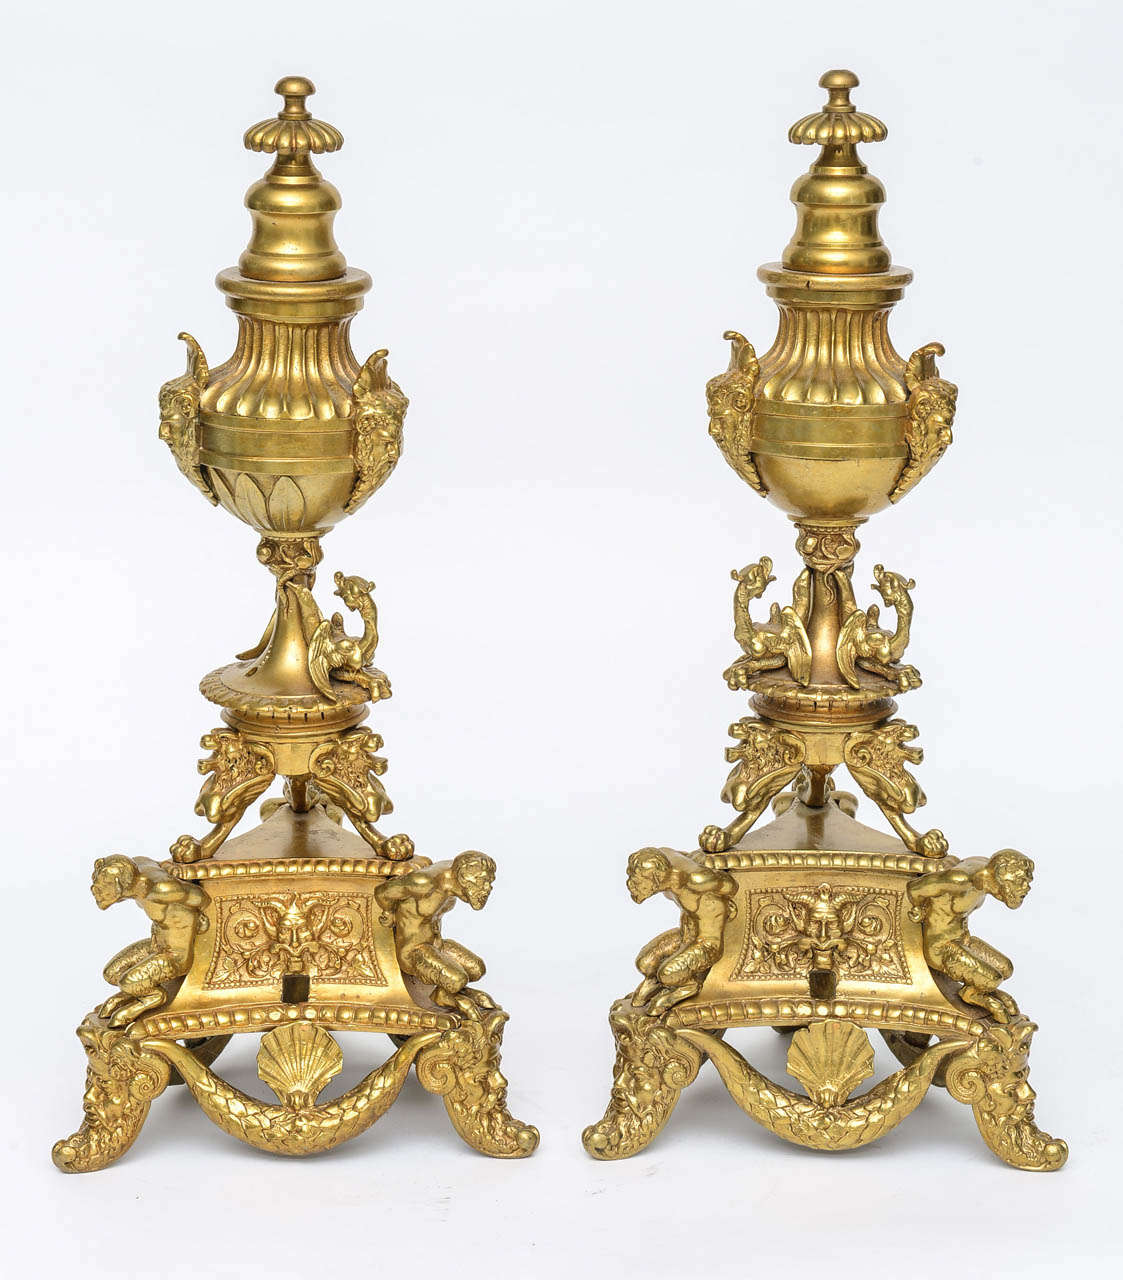 Ces chenets en bronze doré très articulés sont inspirés d'un modèle de chandelier du XVIe siècle réalisé par le grand sculpteur italien de la Renaissance Andrea Briosco, dit Riccio (1470-1532).  Le grand chef-d'œuvre de Riccio est le candélabre